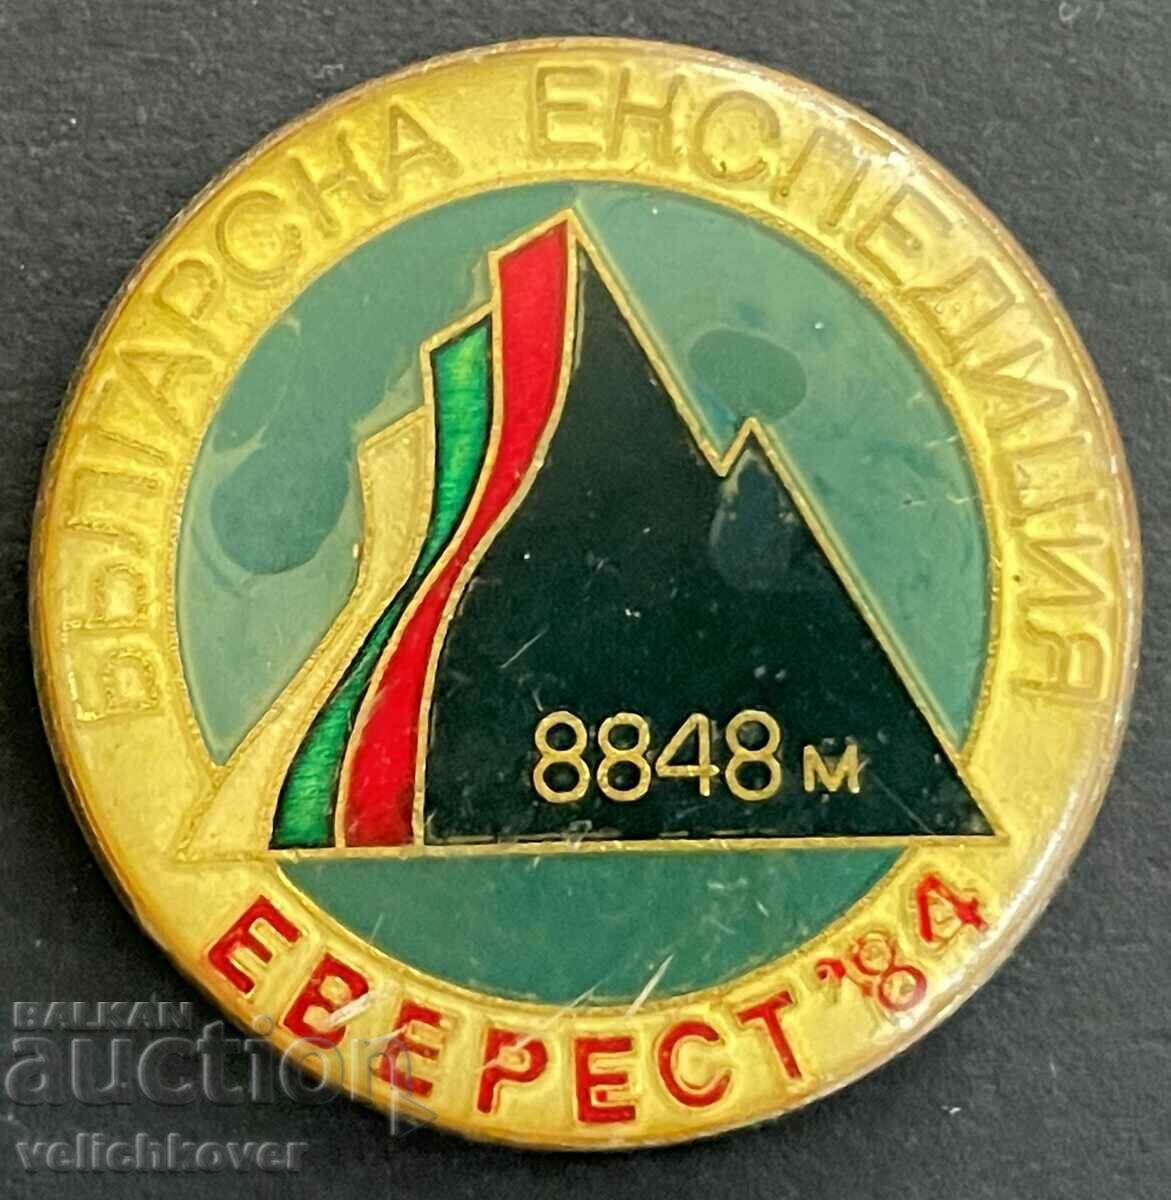 33831 Σήμα Βουλγαρίας Everest Himalaya Mountaineering Expedition